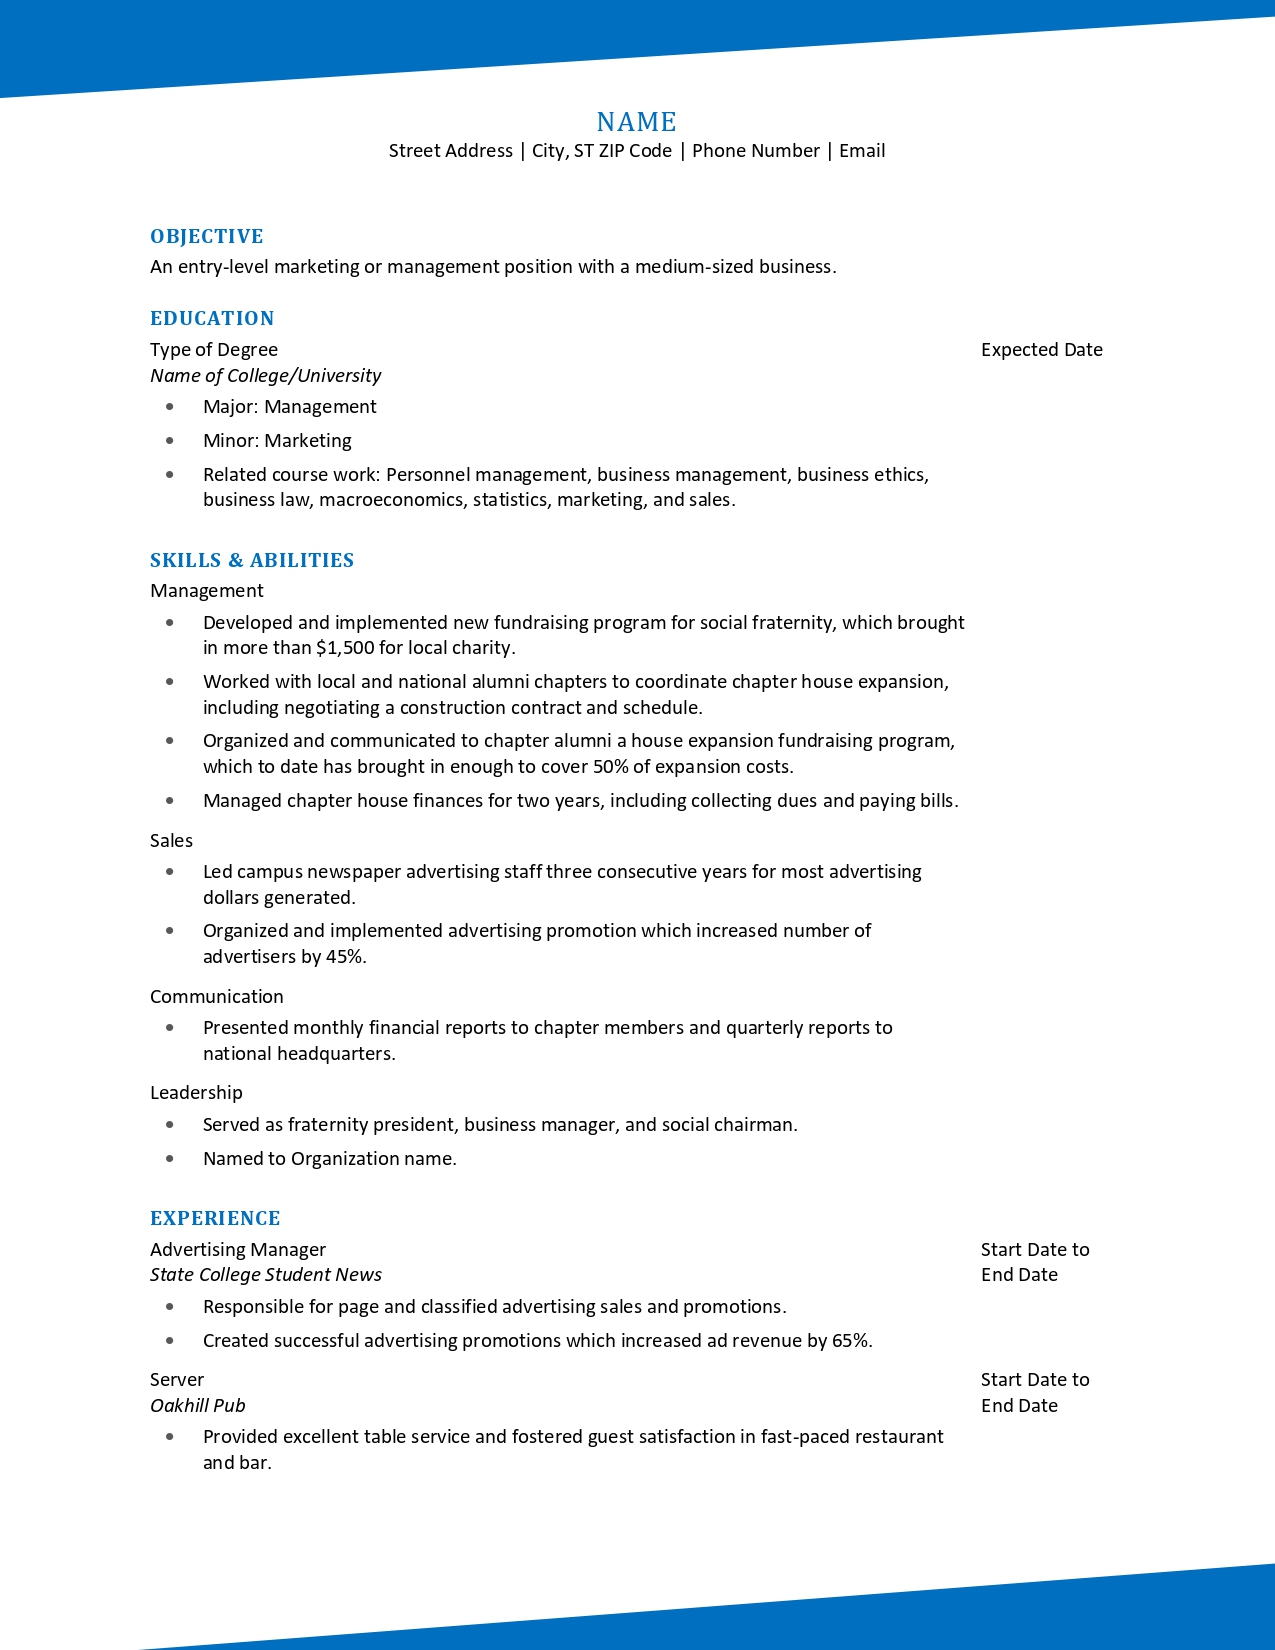 recent graduate resume template